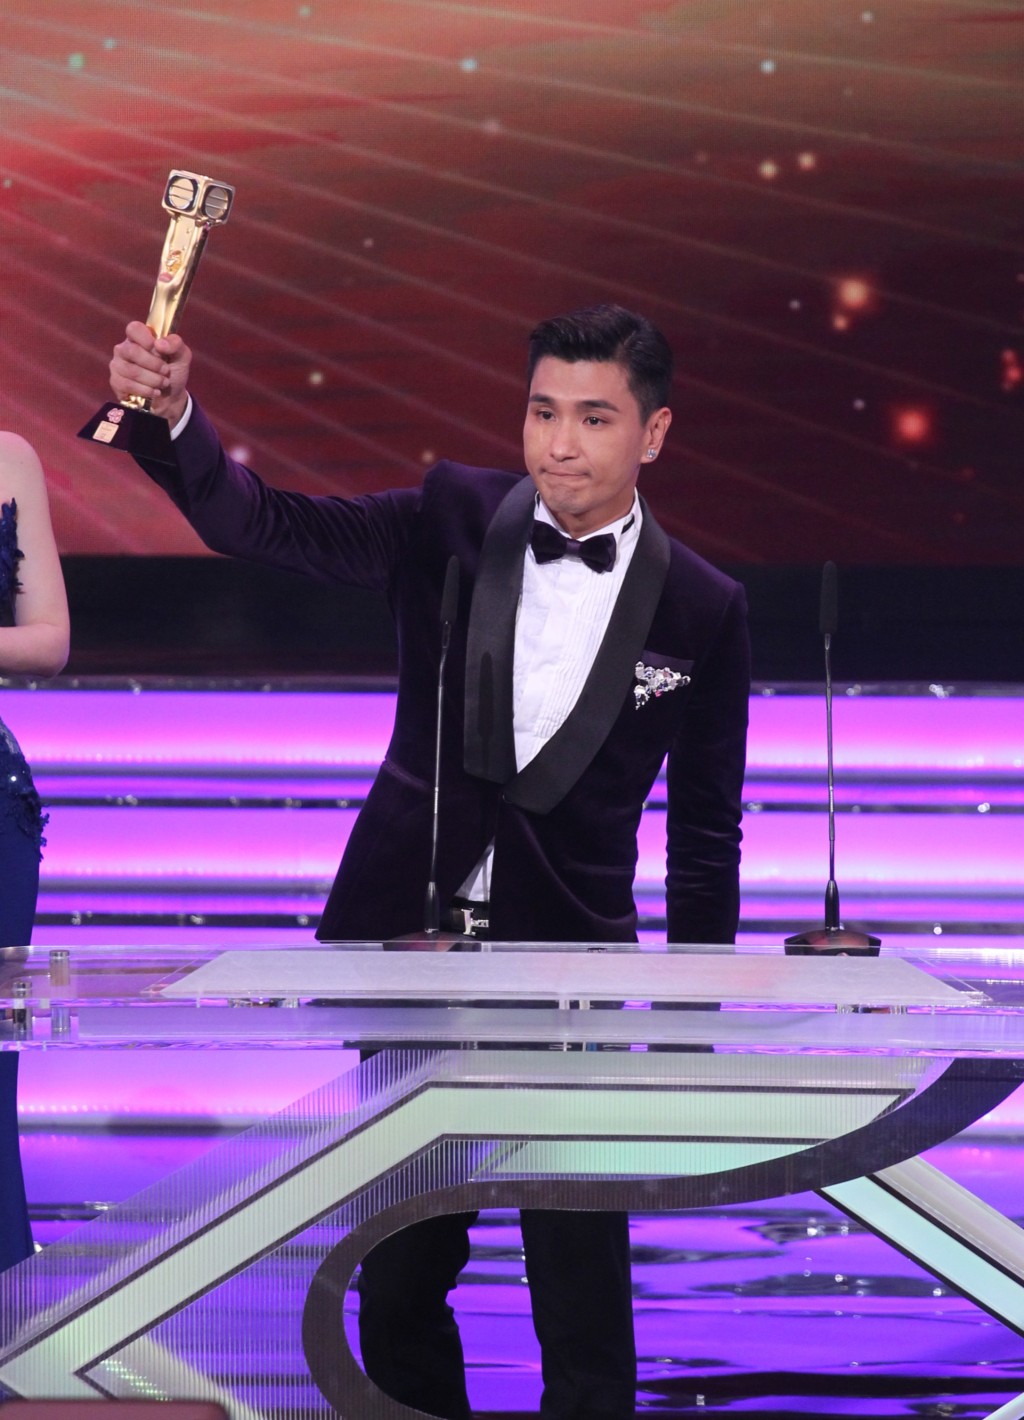 陈展鹏2015年获得「最受欢迎电视男角色」。